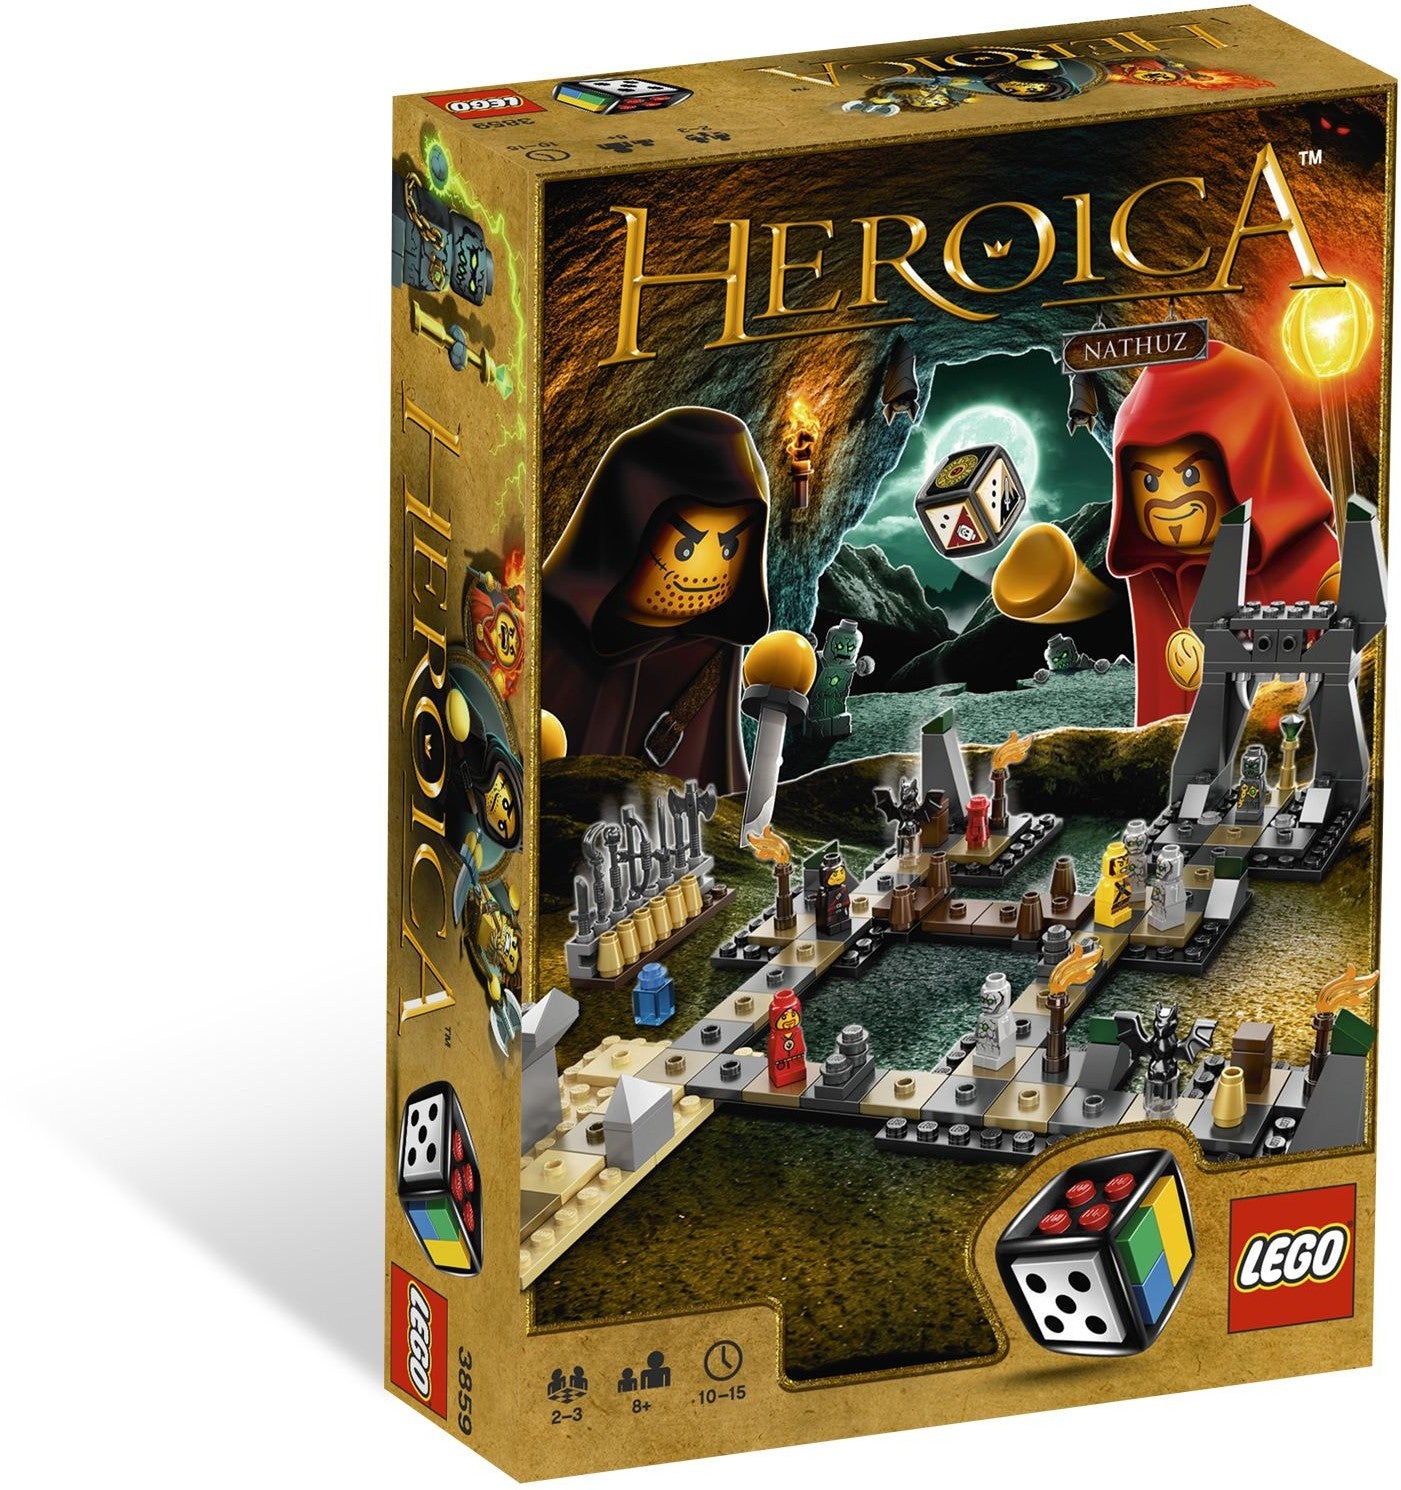 Lego Heroica 3859 - Caverns of Nathuz